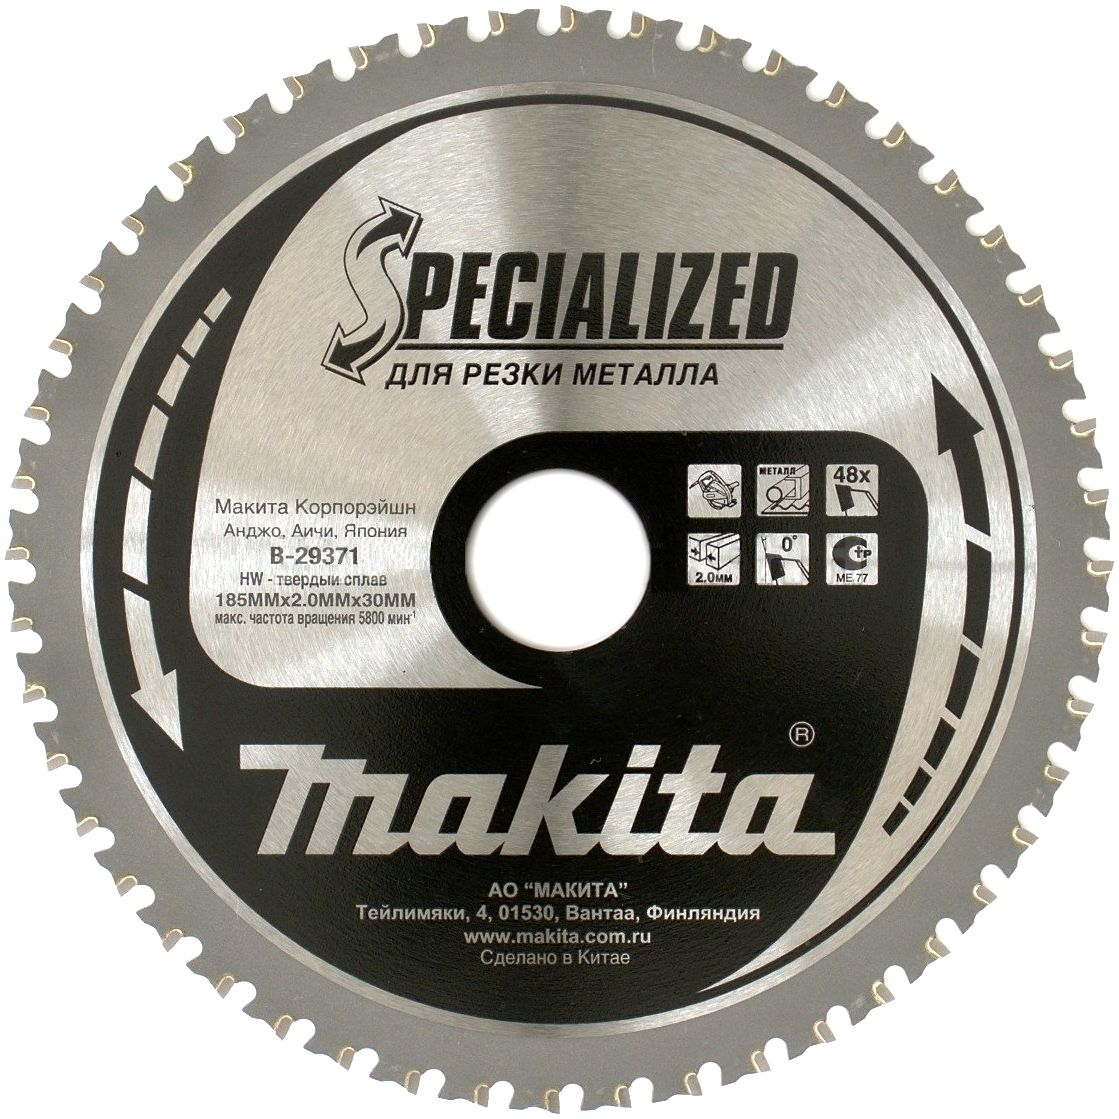 Пильный диск Makitaпо металлу 305x25.4x2.4х60T A-86723